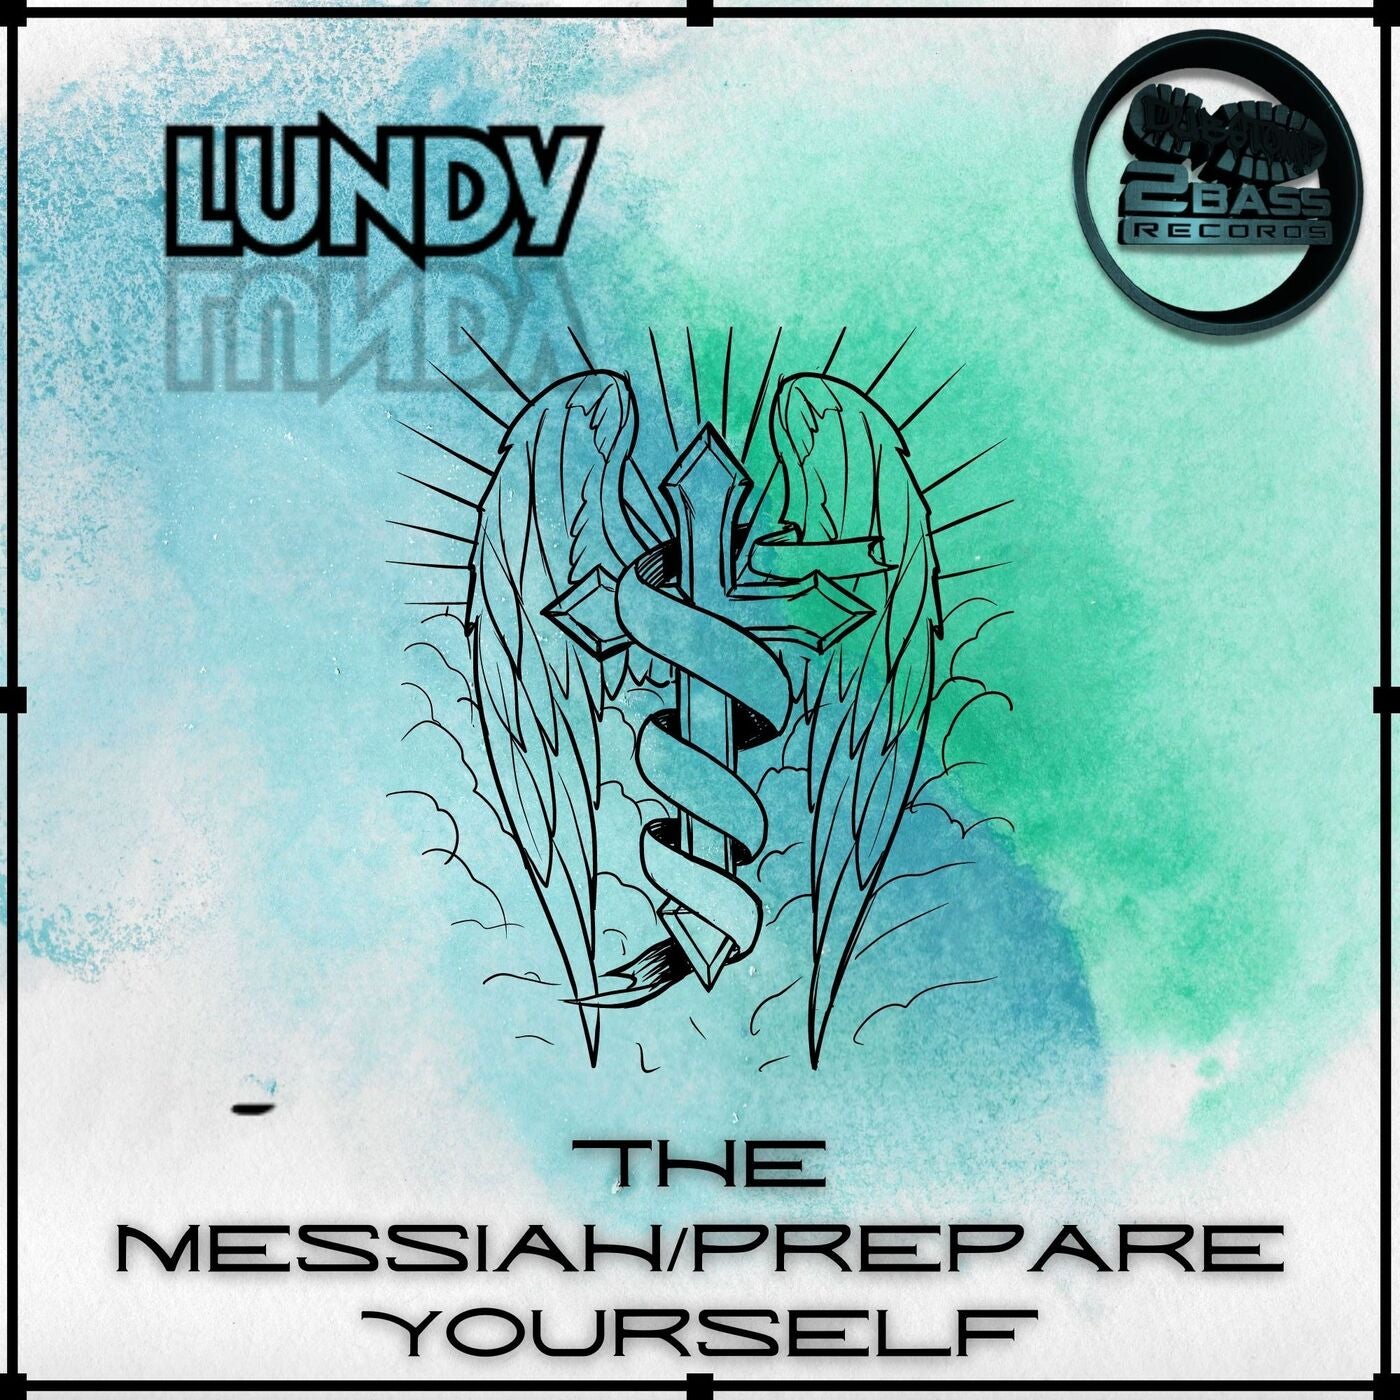 Prepare Yourself / The Messiah